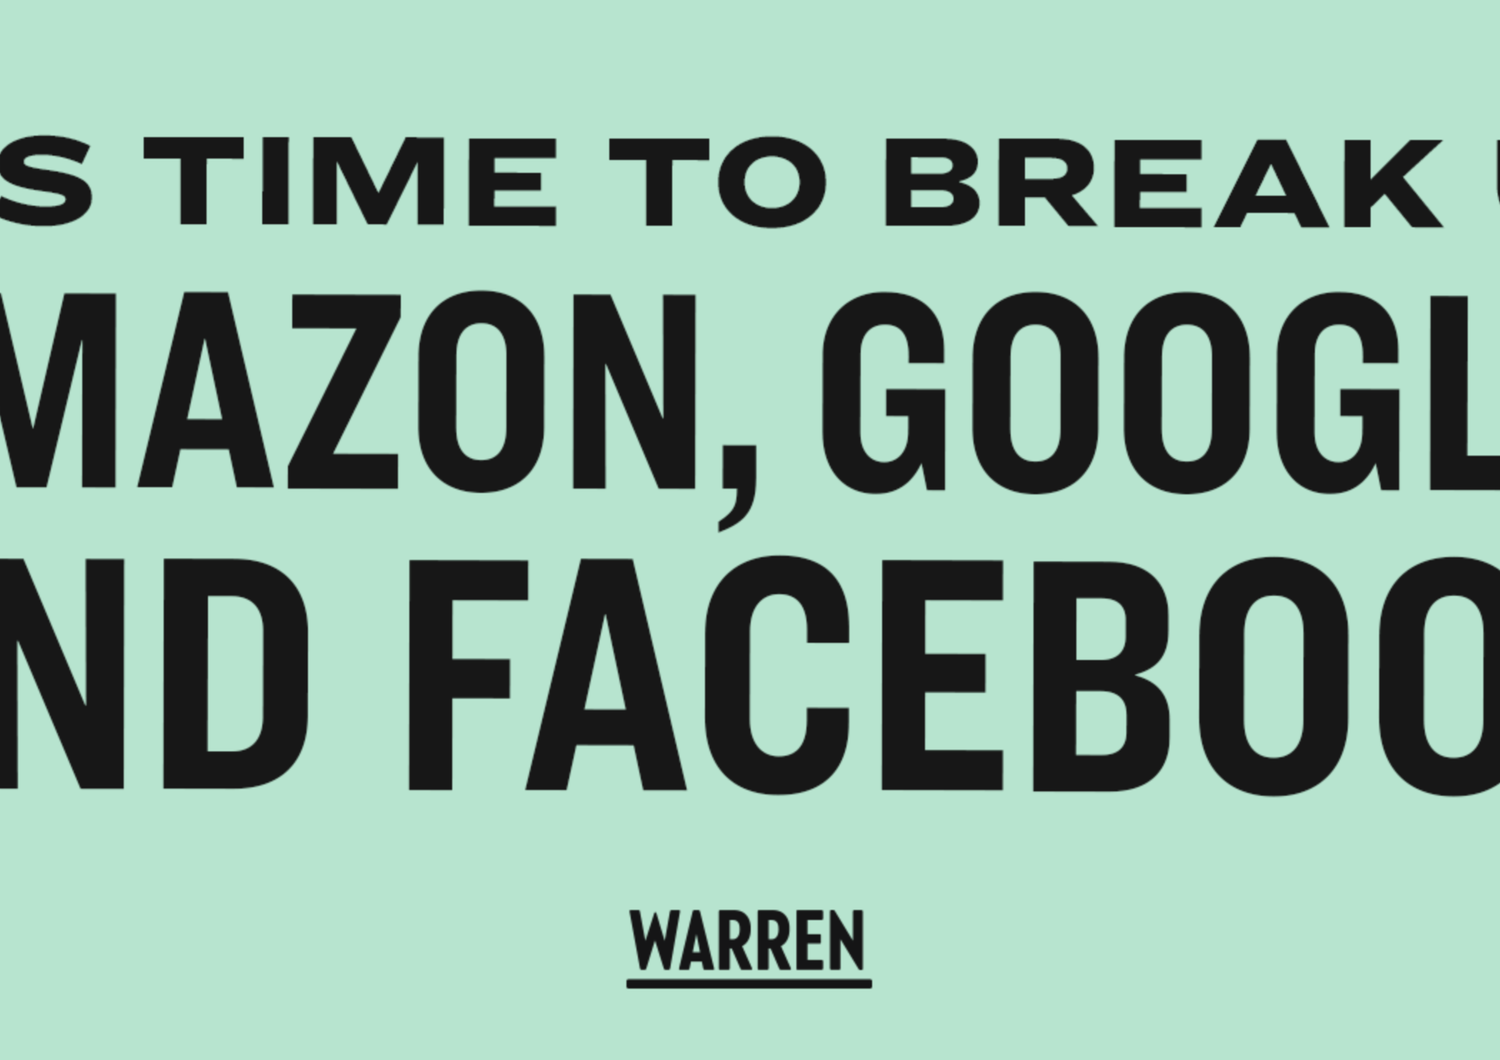 Warren&nbsp;Amazon&nbsp;Google Facebook antitrust